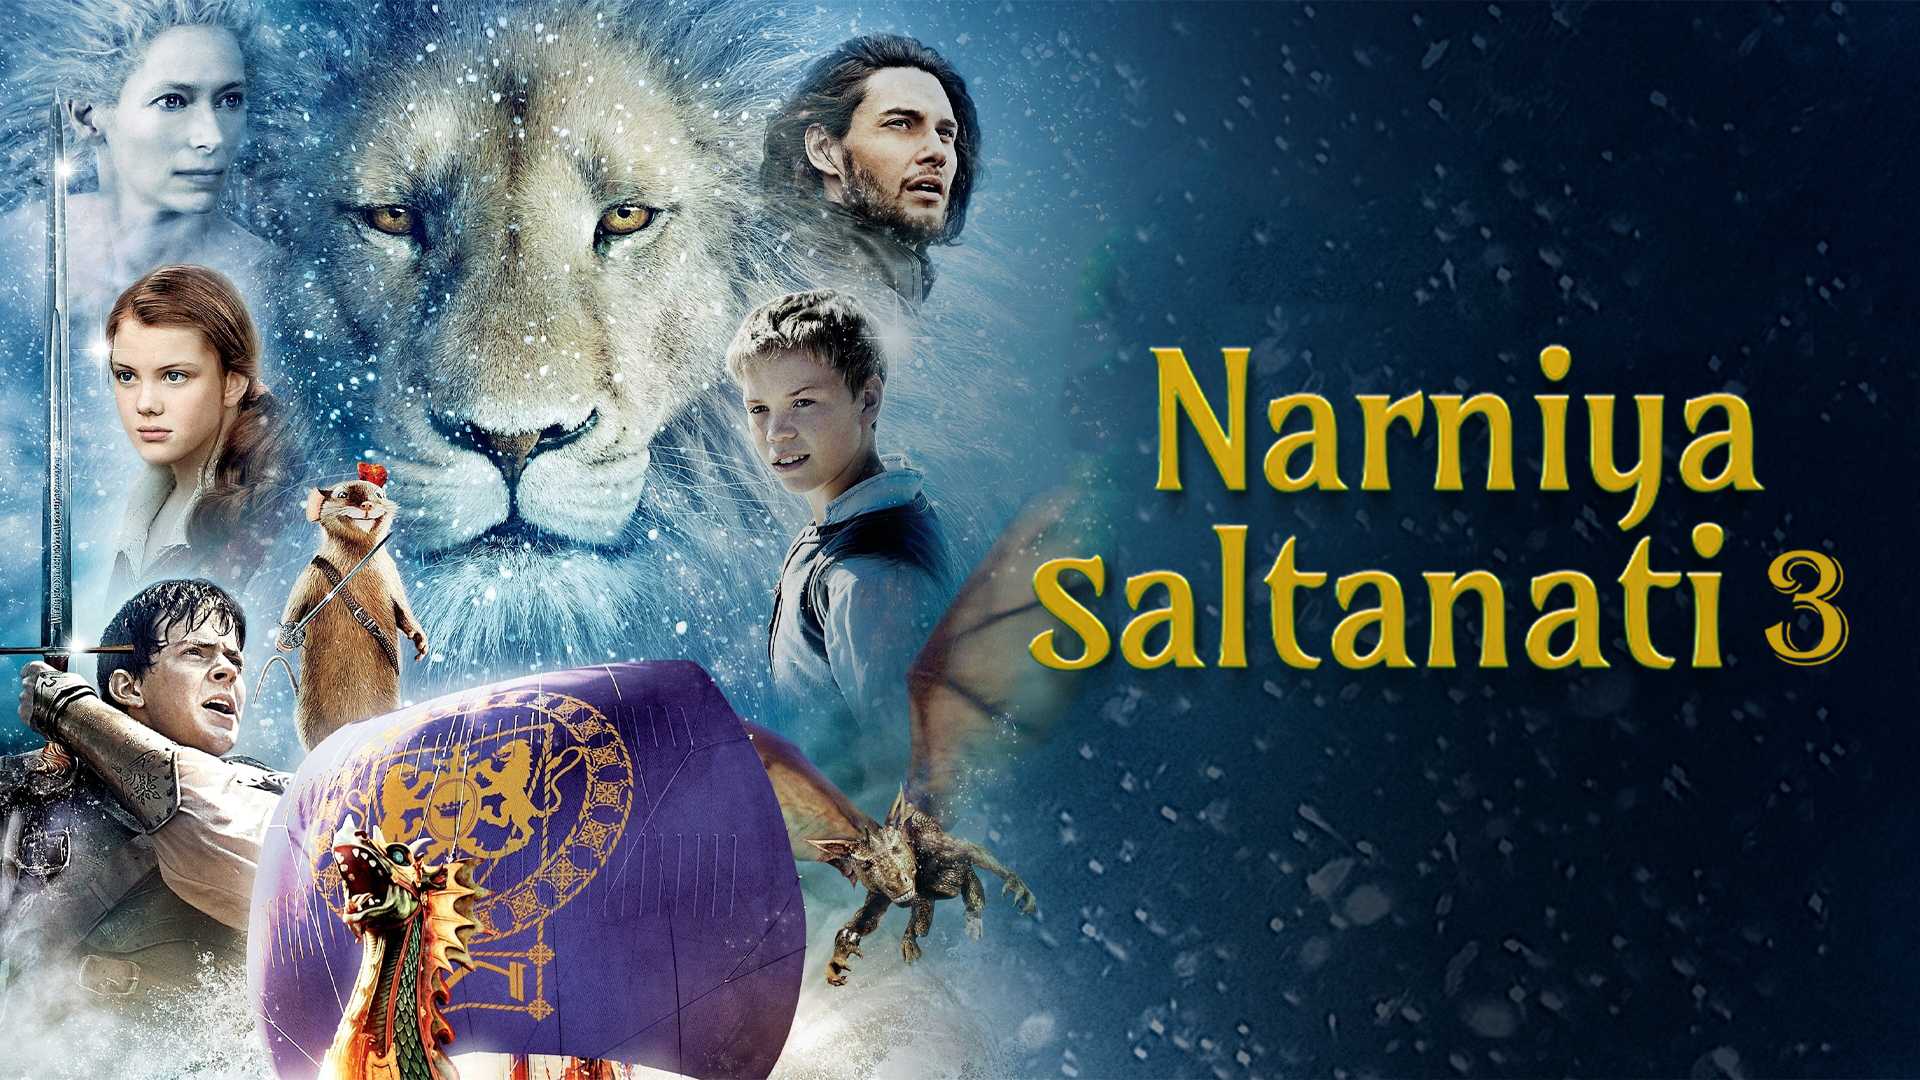 Narniya saltanati 3